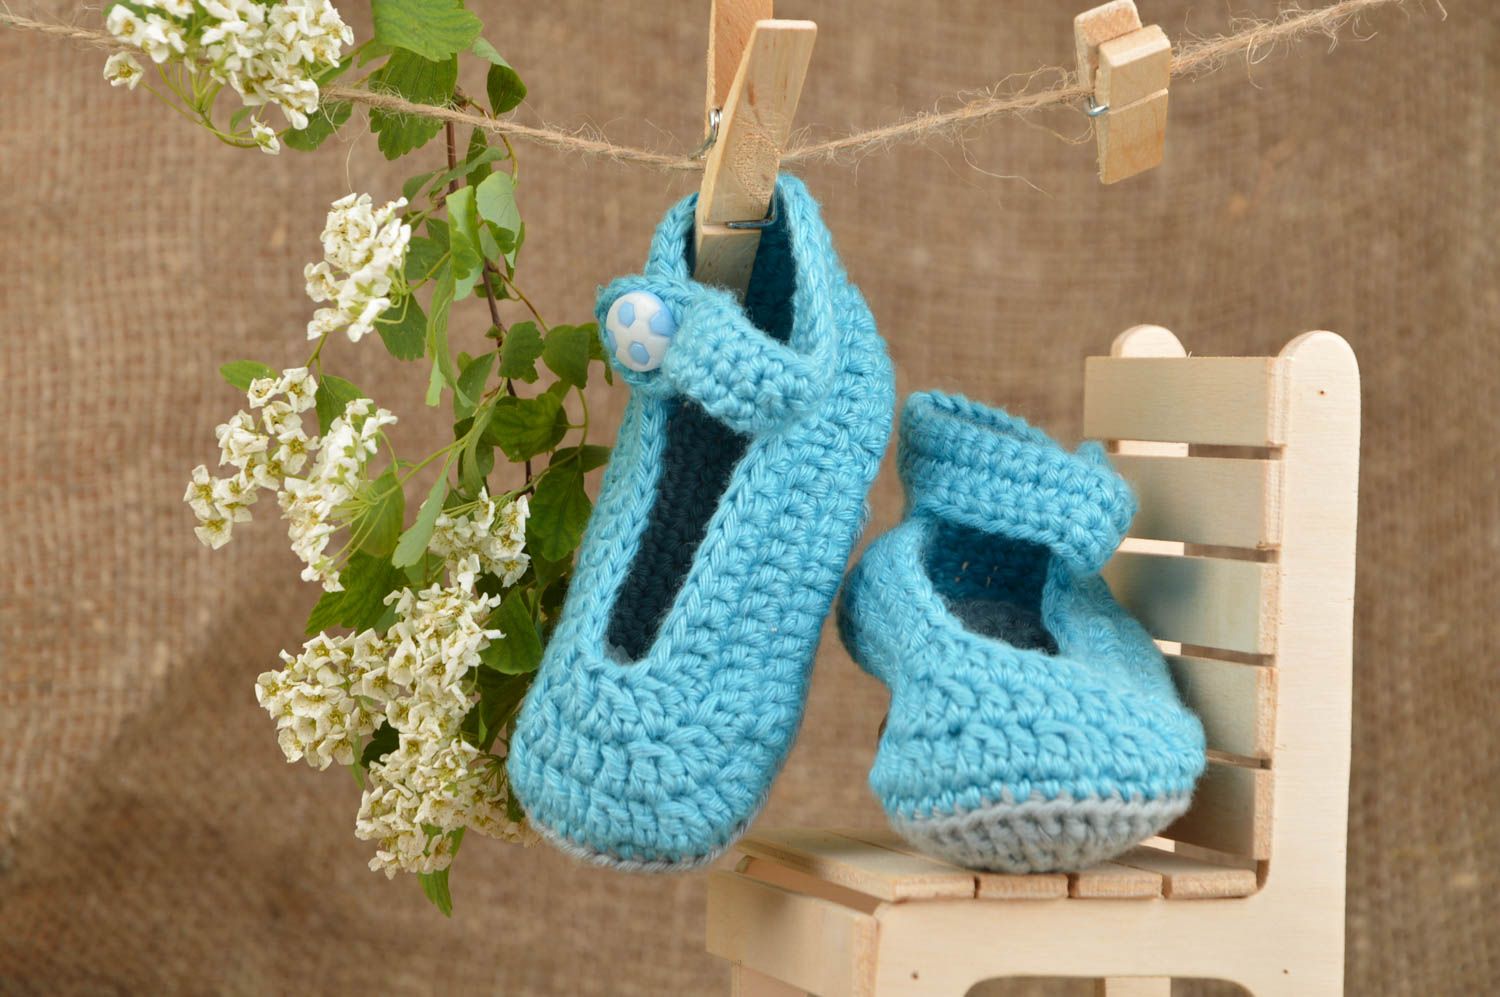 Chaussons pour bébé bleu ciel en coton naturel faits main originaux jolis photo 1